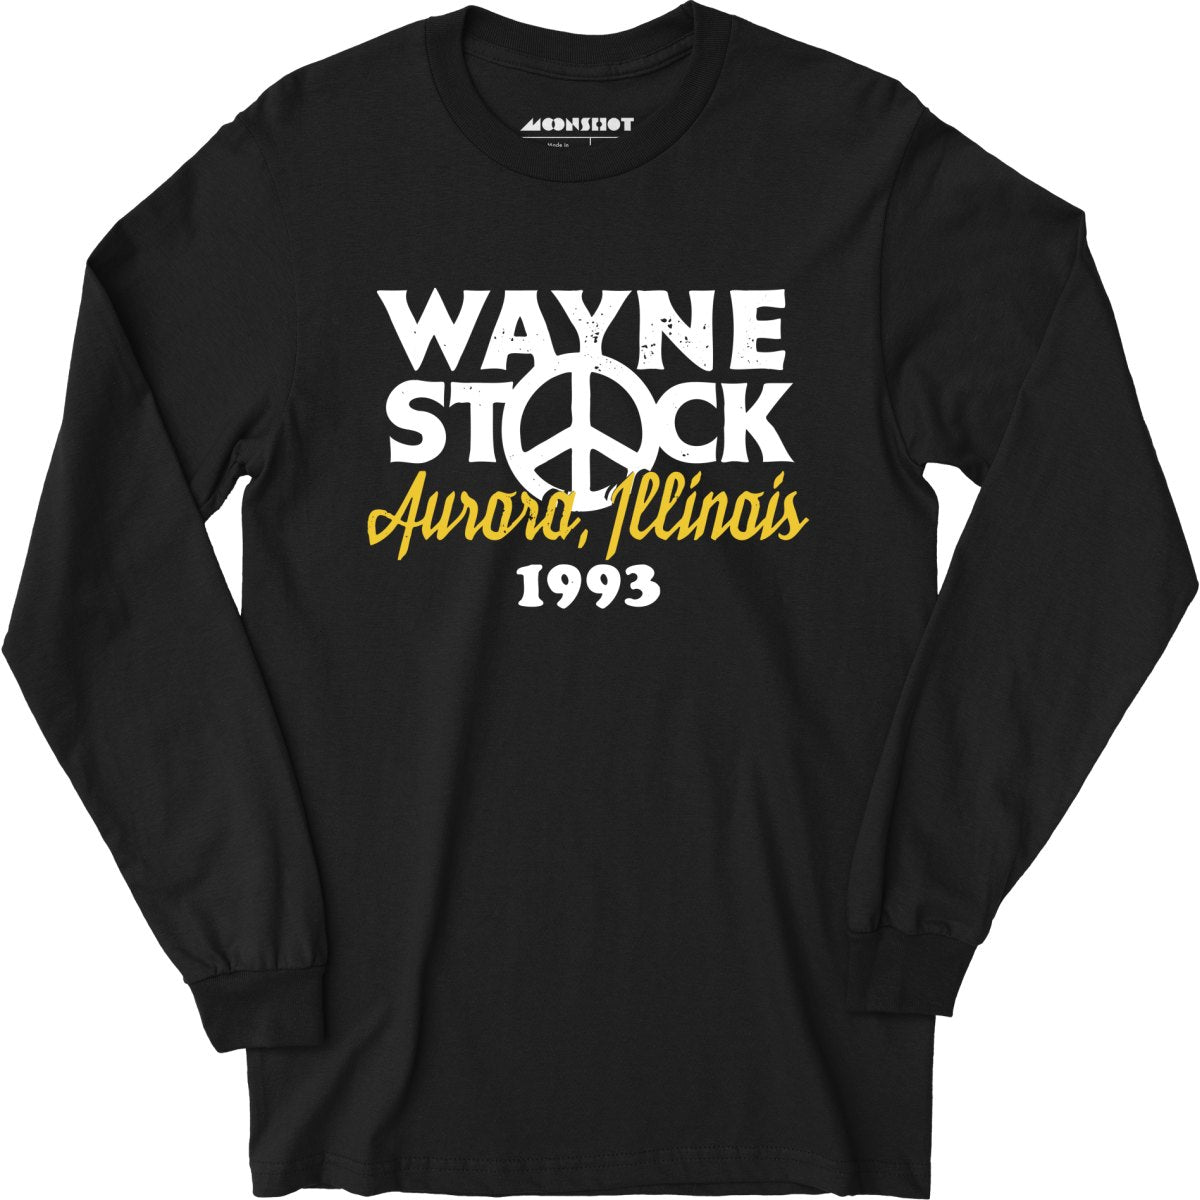 Waynestock 1993 - Long Sleeve T-Shirt